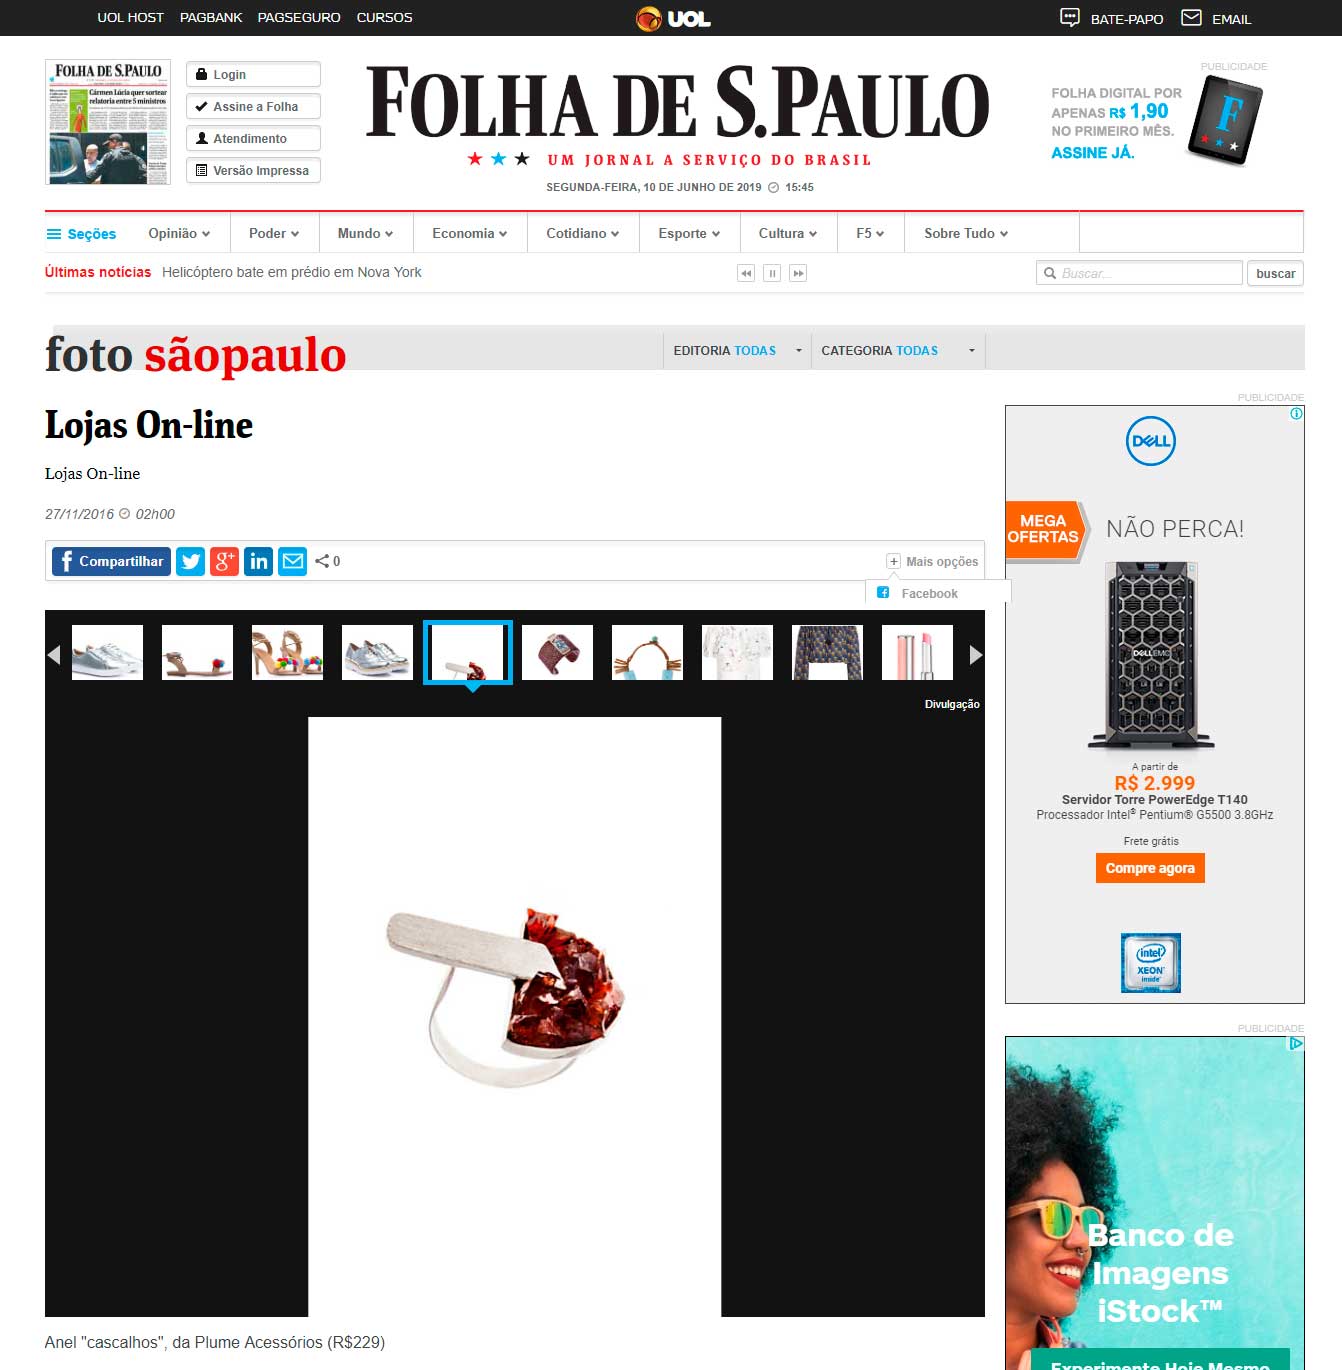 Anel e Bracelete Plume são destaque de galeria de foto online da Folha de S. Paulo